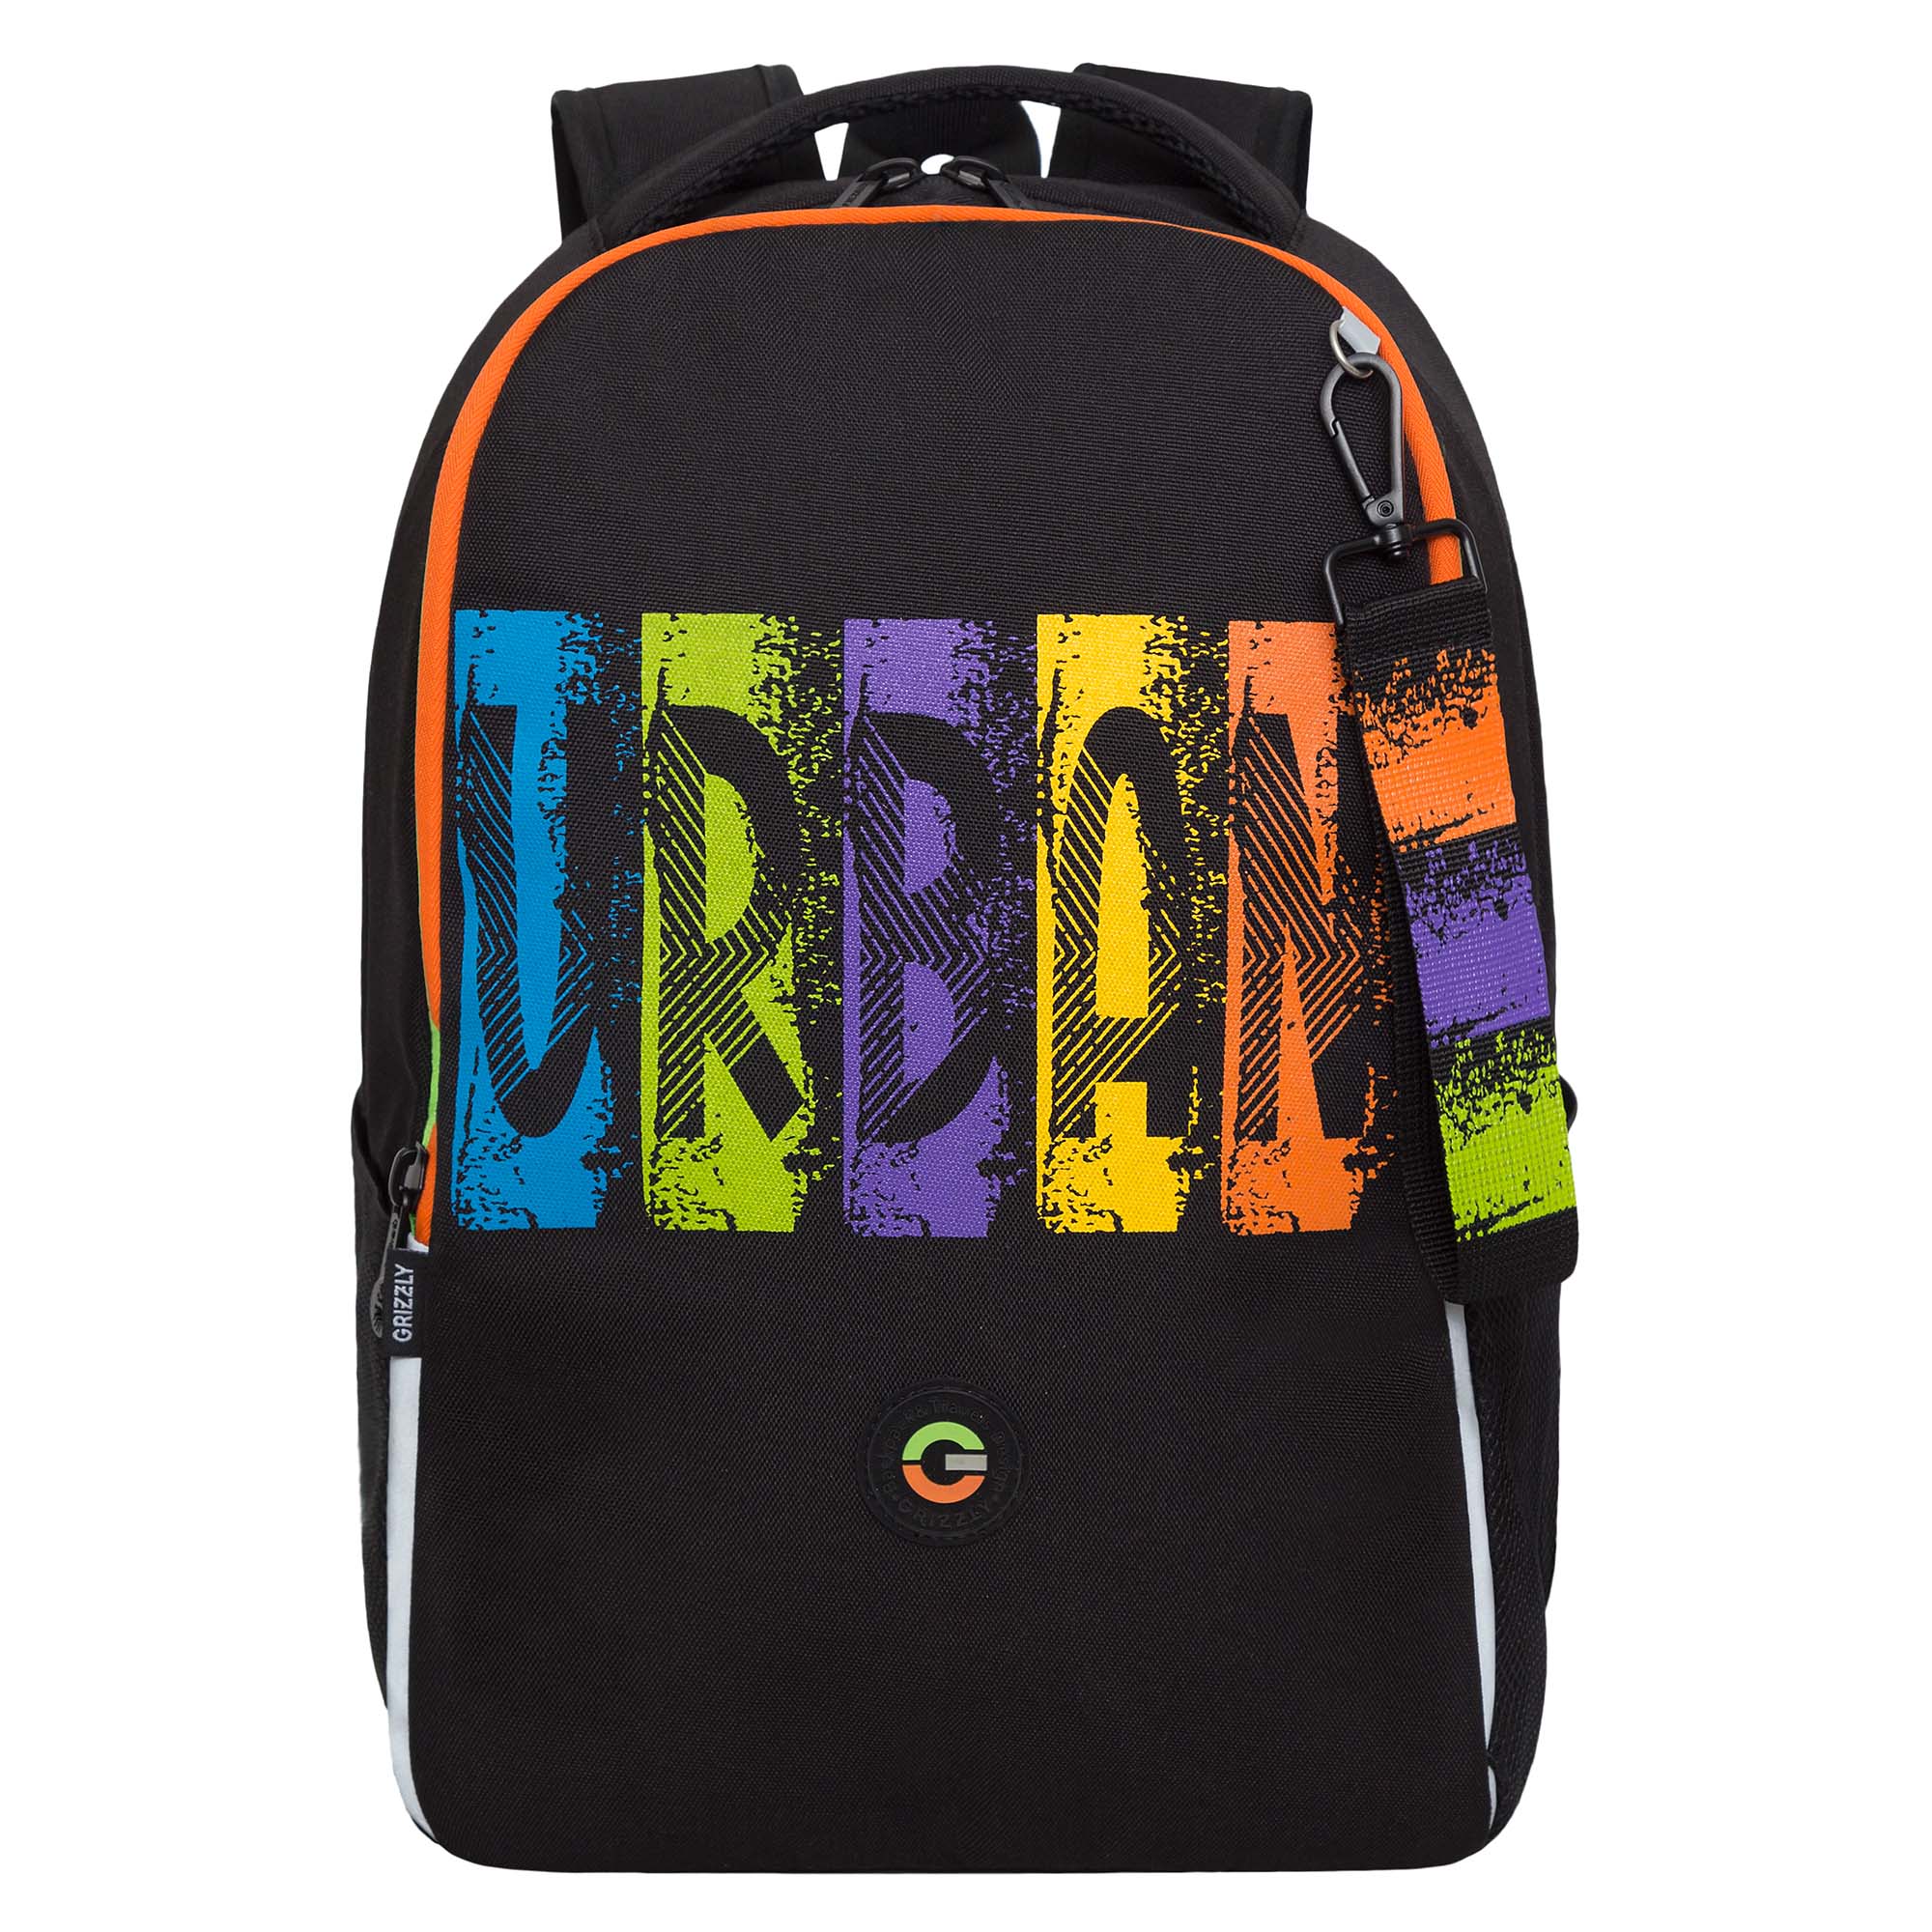 Рюкзак школьный GRIZZLY легкий с жесткой спинкой, 2 отделения, черный, RB-451-3/1 рюкзак школьный 42 см дино два отделения